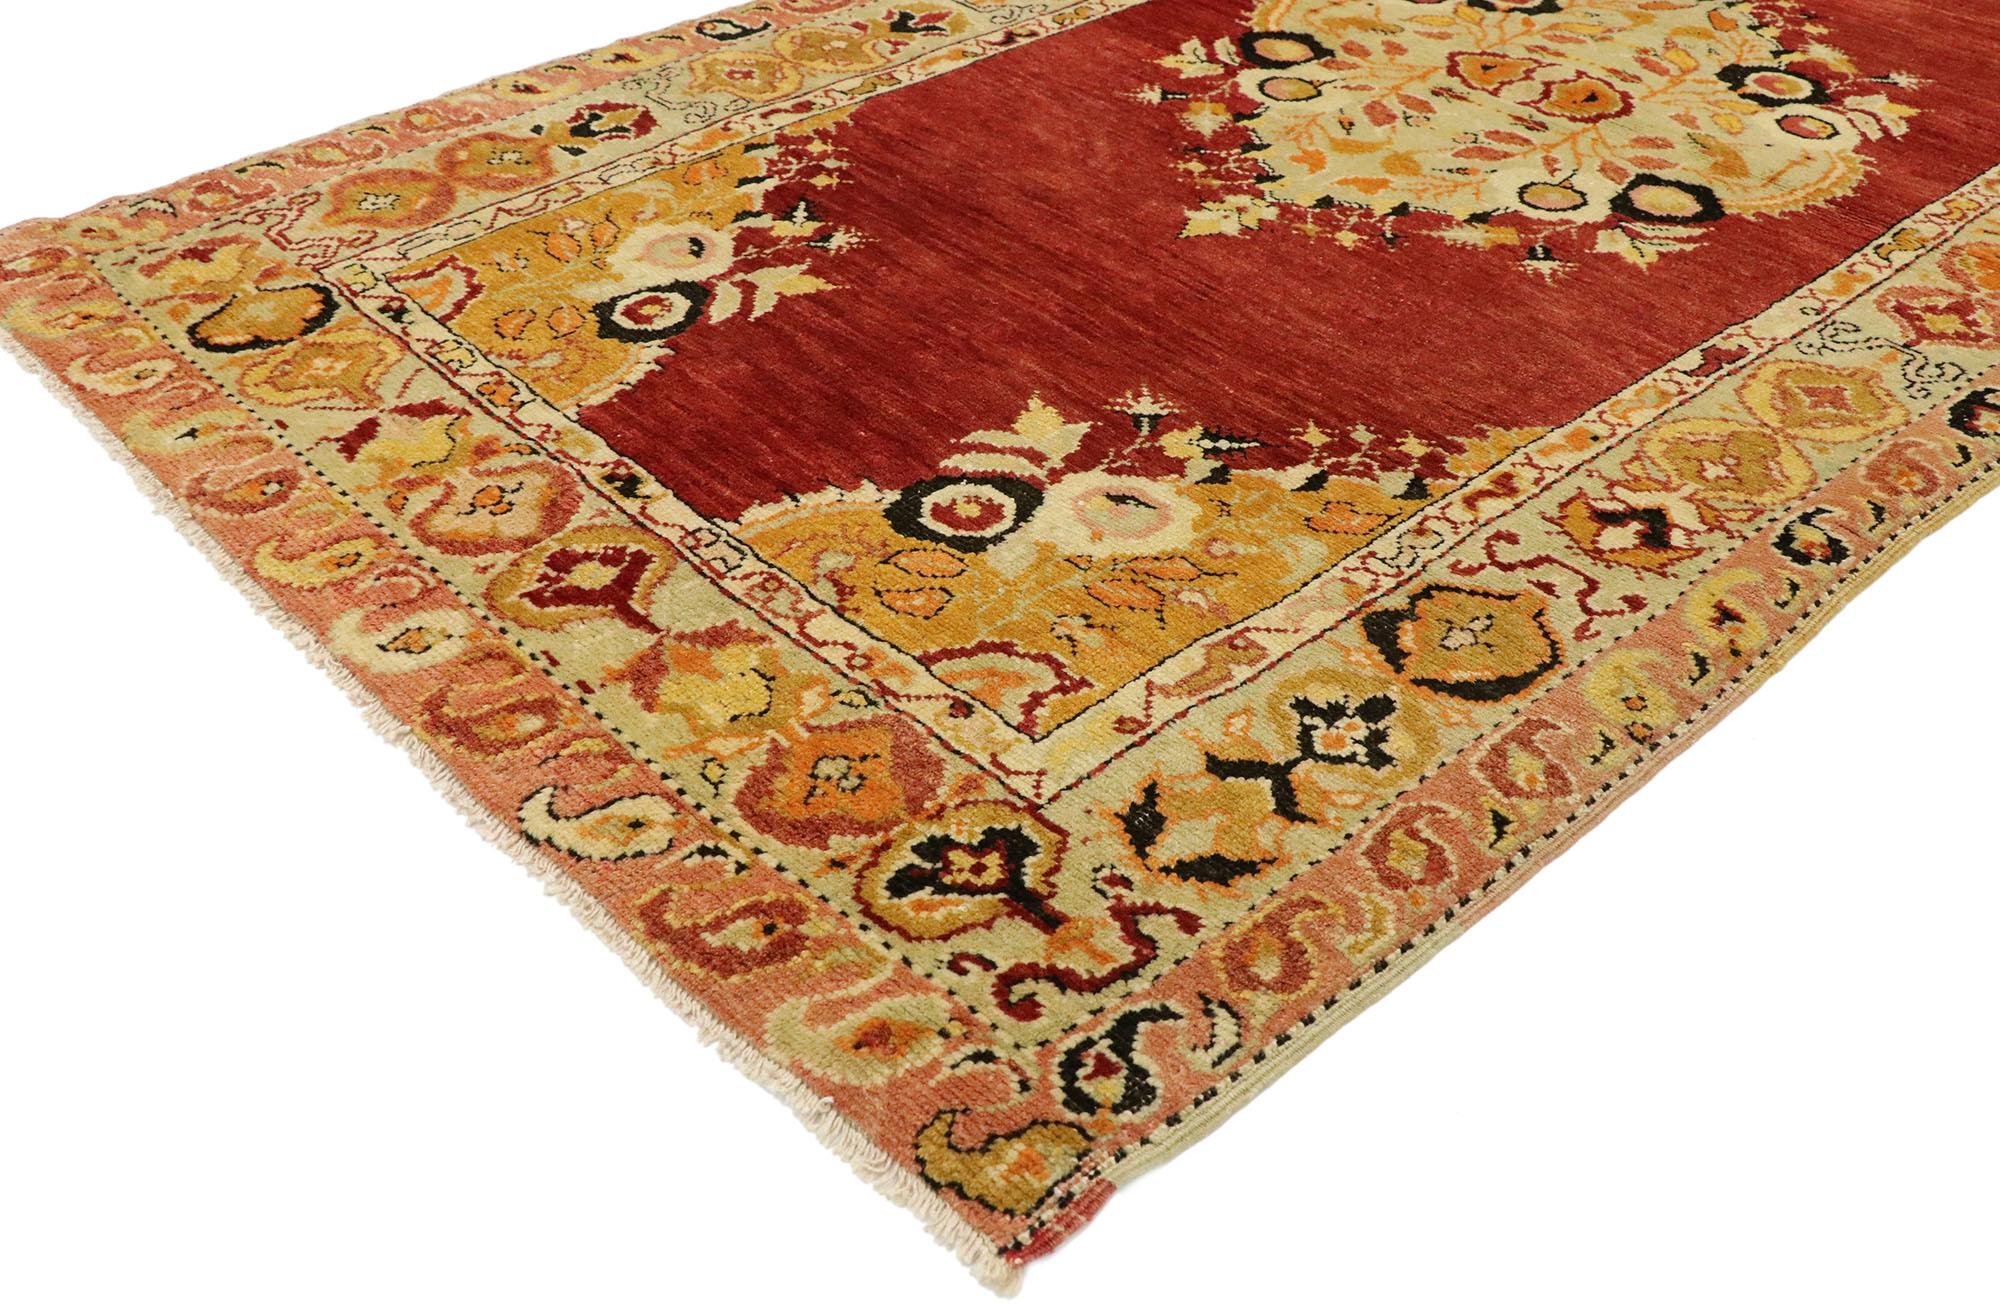 51267 Türkischer Oushak-Teppich Vintage, 03'02 x 05'11. Dieser handgeknüpfte türkische Oushak-Teppich aus Wolle, der von anatolischer Geschichte und kultureller Bedeutung geprägt ist, verbindet meisterhaft Raffinesse mit einer lebendigen